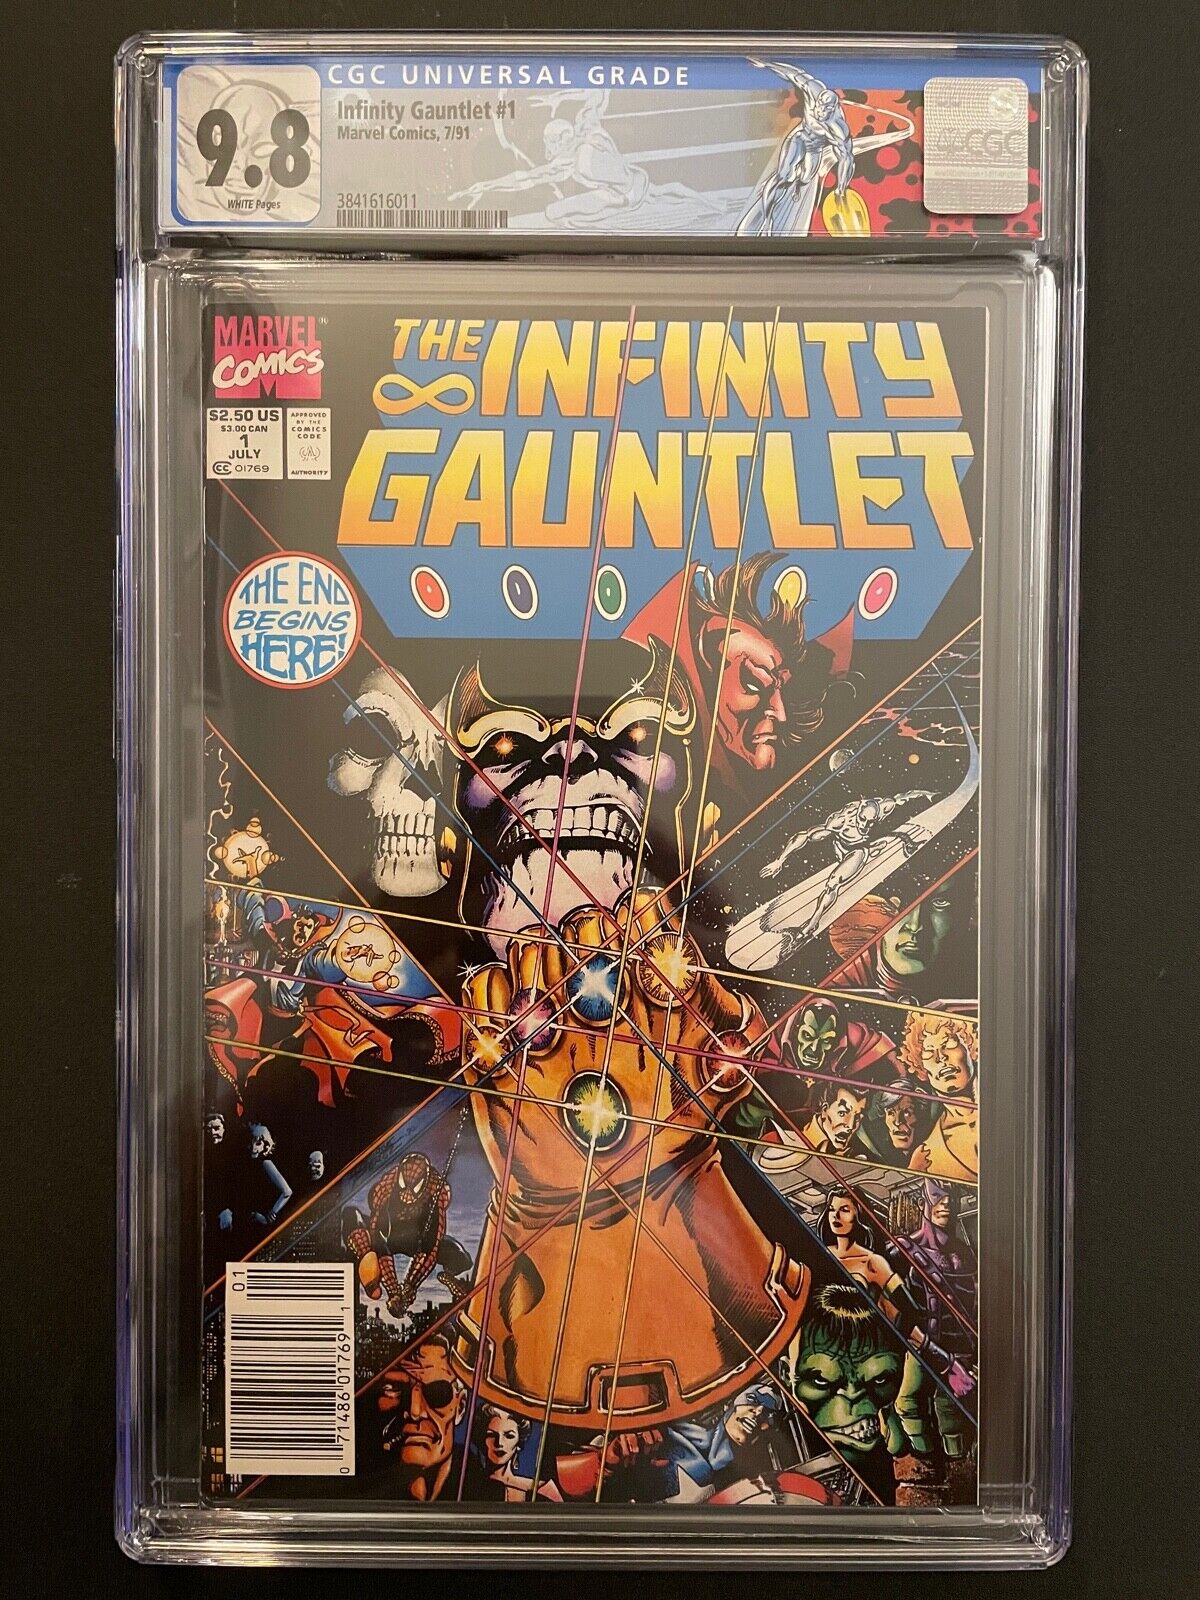 Infinity Gauntlet vol.1 #1 1991 Newsstand CGC 9.8 Marvel Comic Book GR1-131